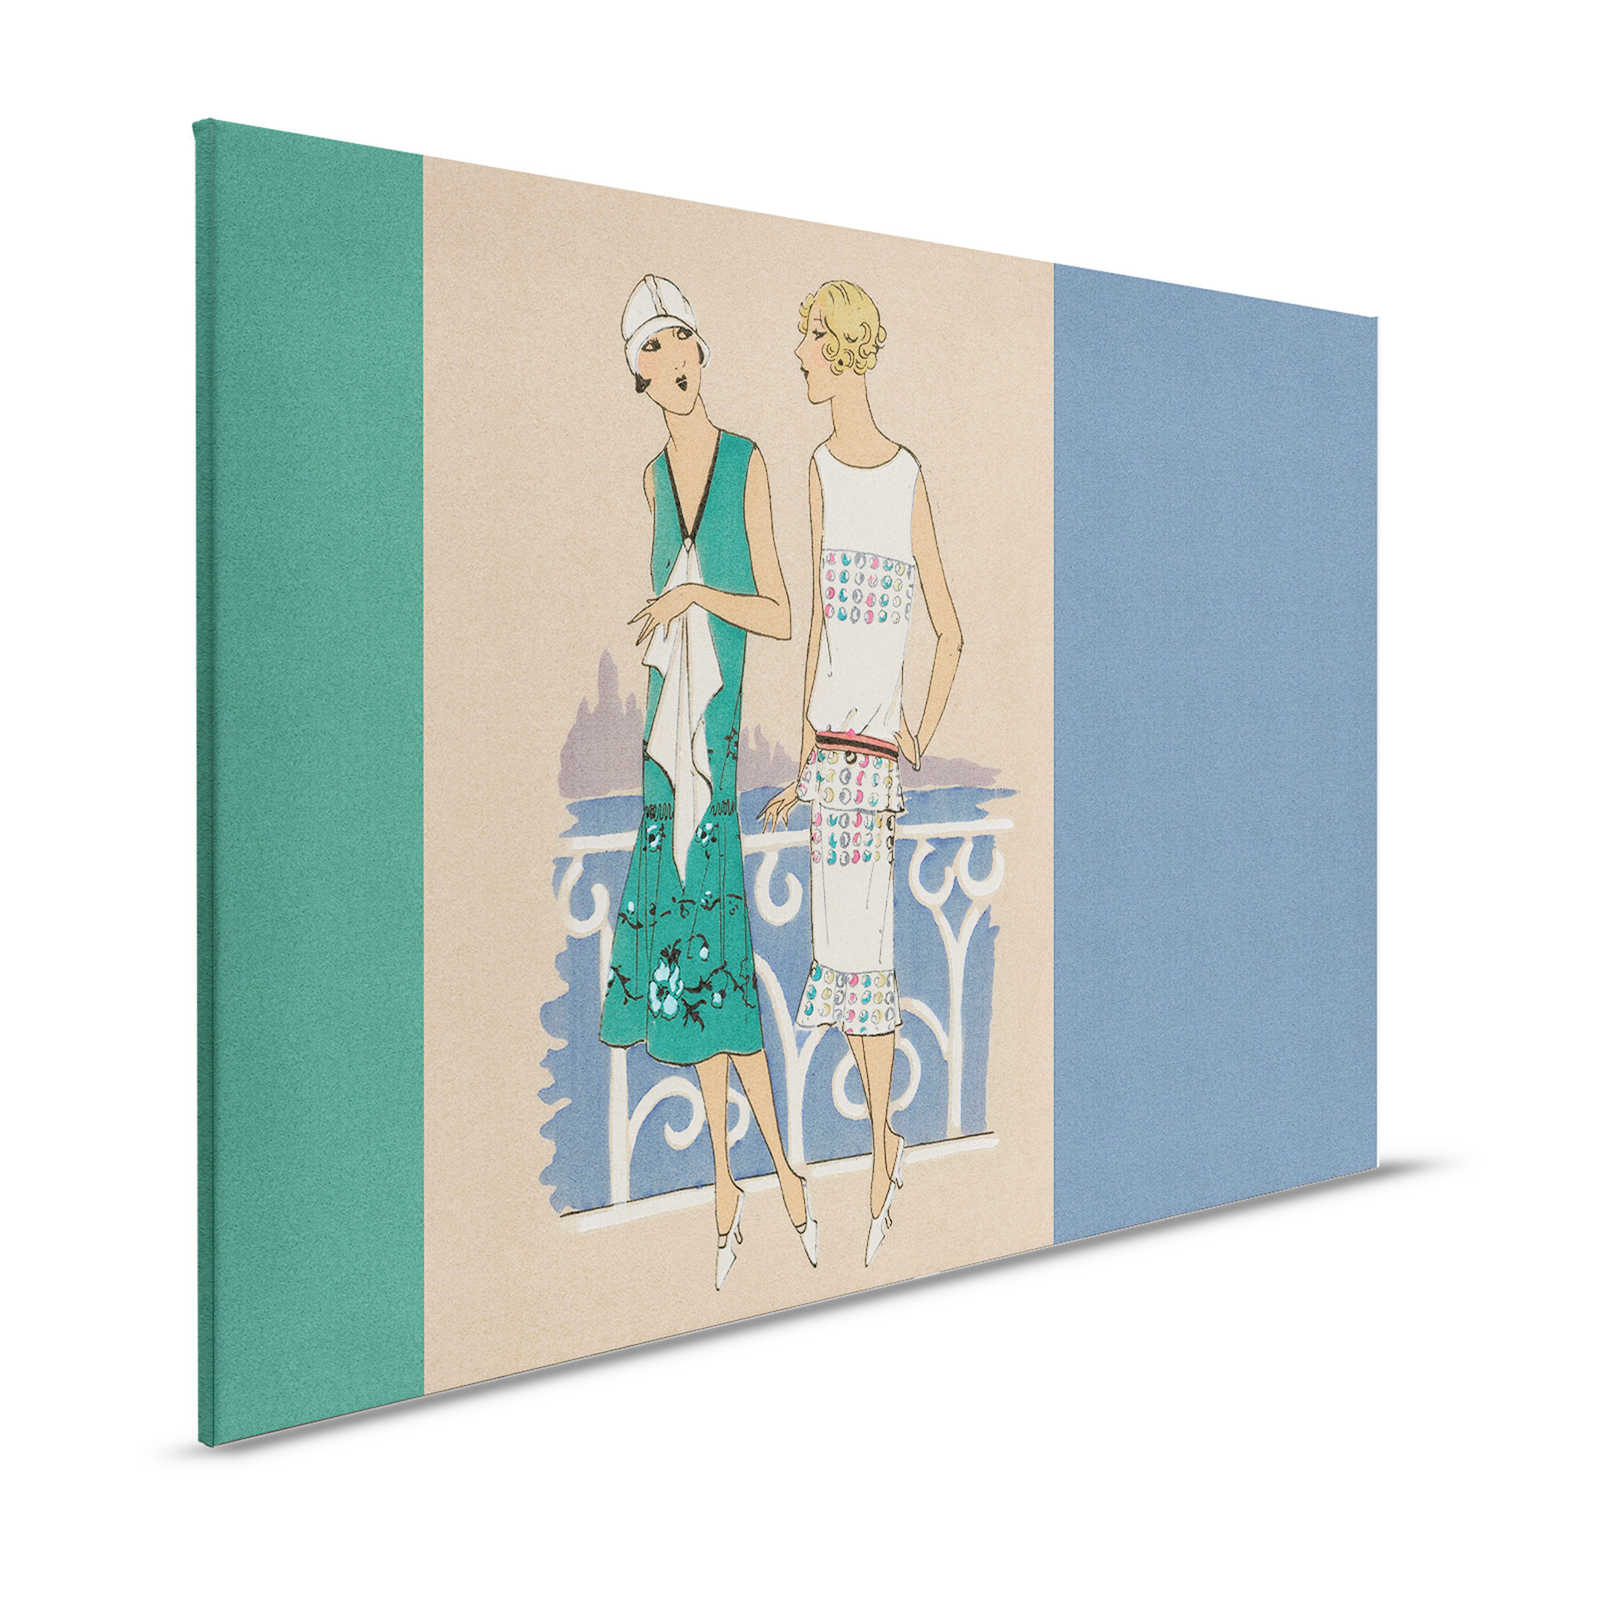 Parisienne 3 - Quadro retrò su tela stampa moda anni '20 in blu e verde - 1,20 m x 0,80 m
